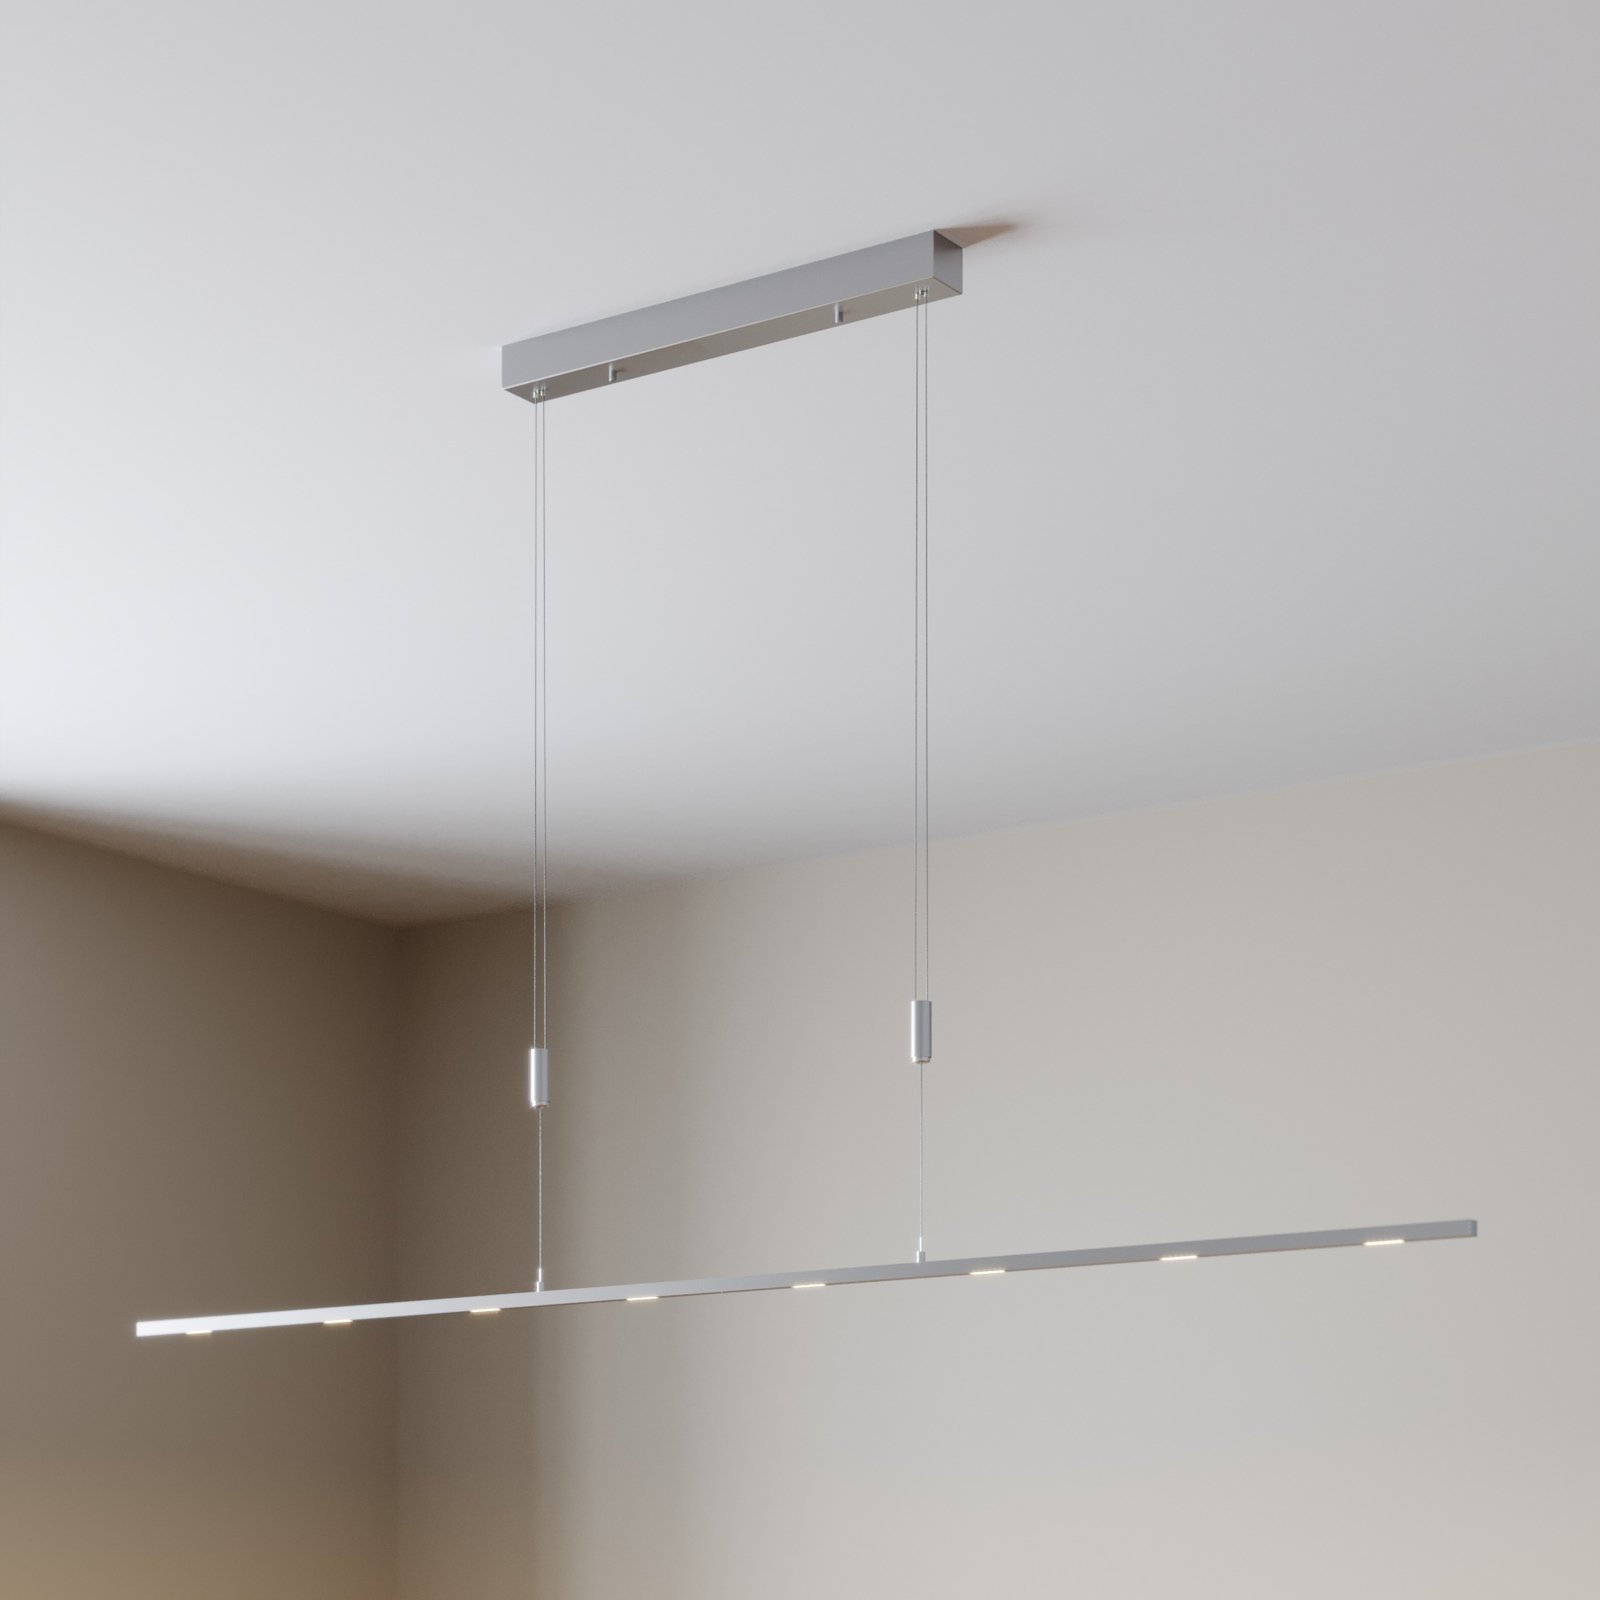 LED-taklampa Arnik, dimbar, 180 cm